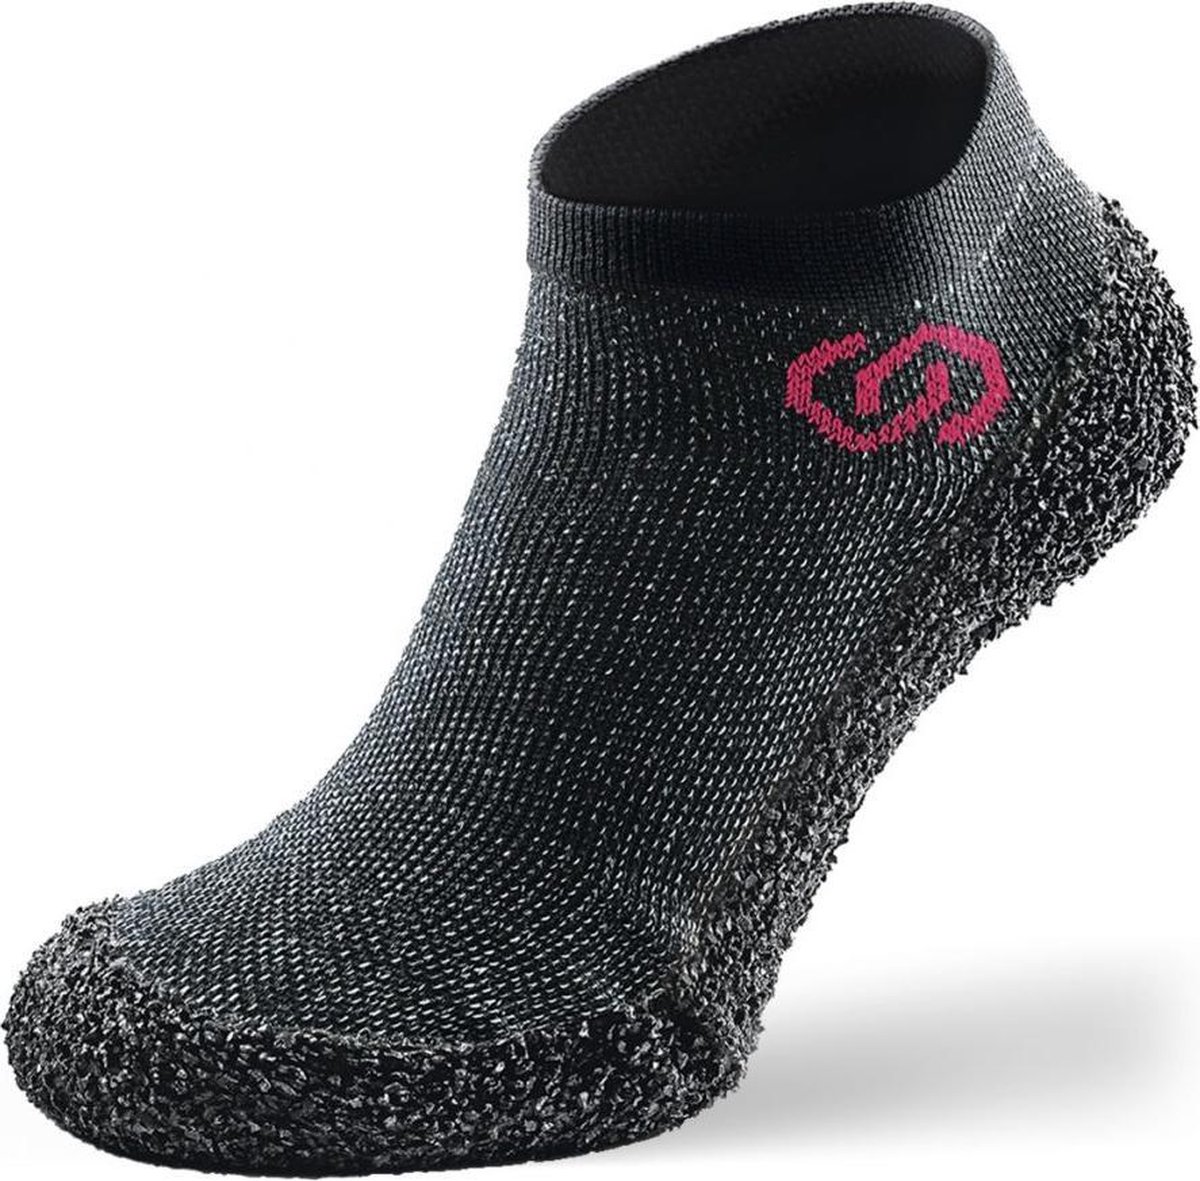 Skinners Barefoot sokschoenen - compact en lichtgewicht - Speckled - XL